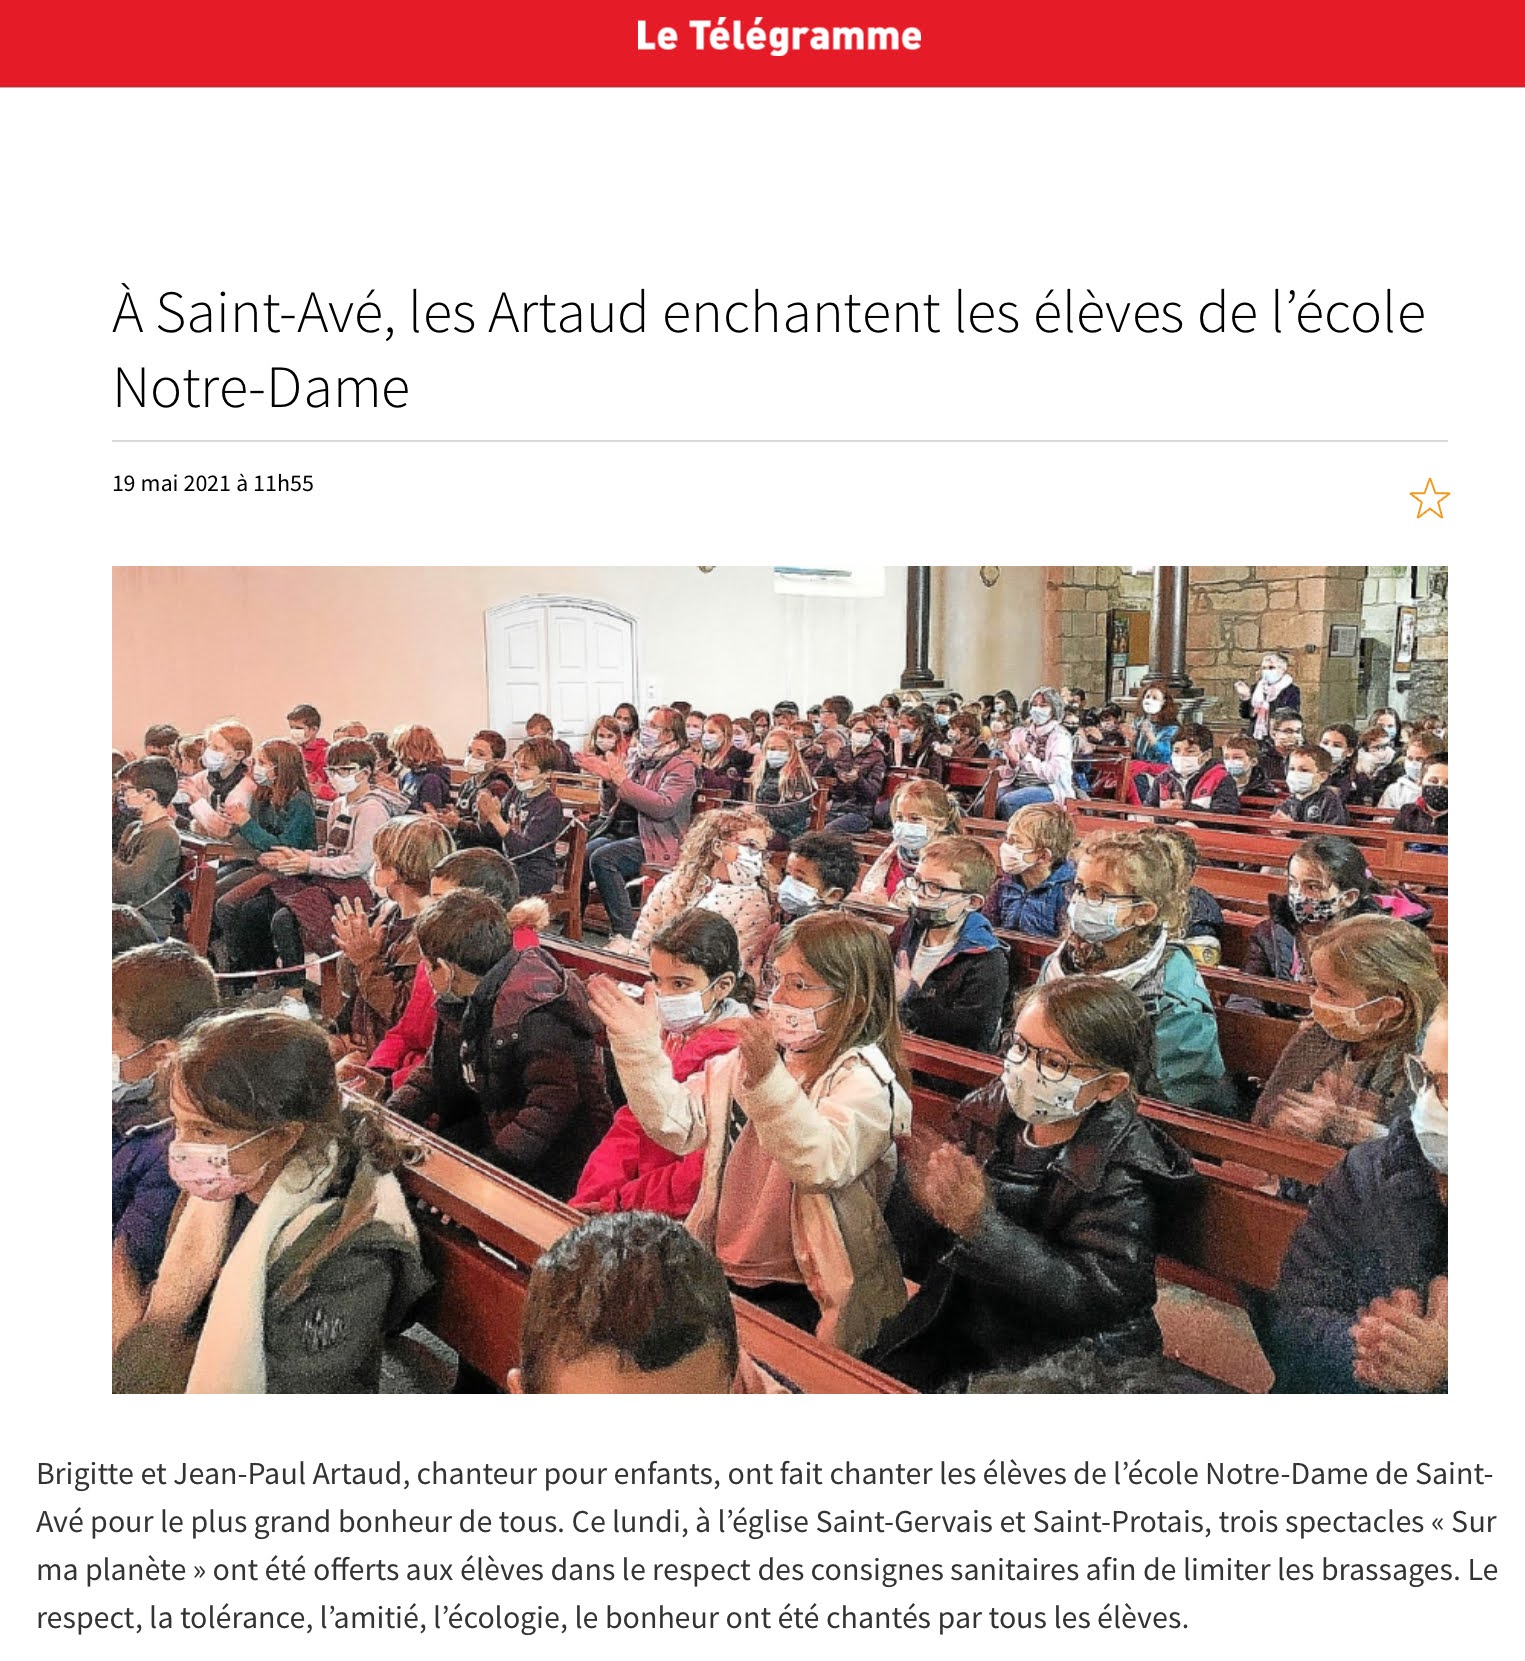 Les Artaud enchantent les élèves de l'école Notre-Dame